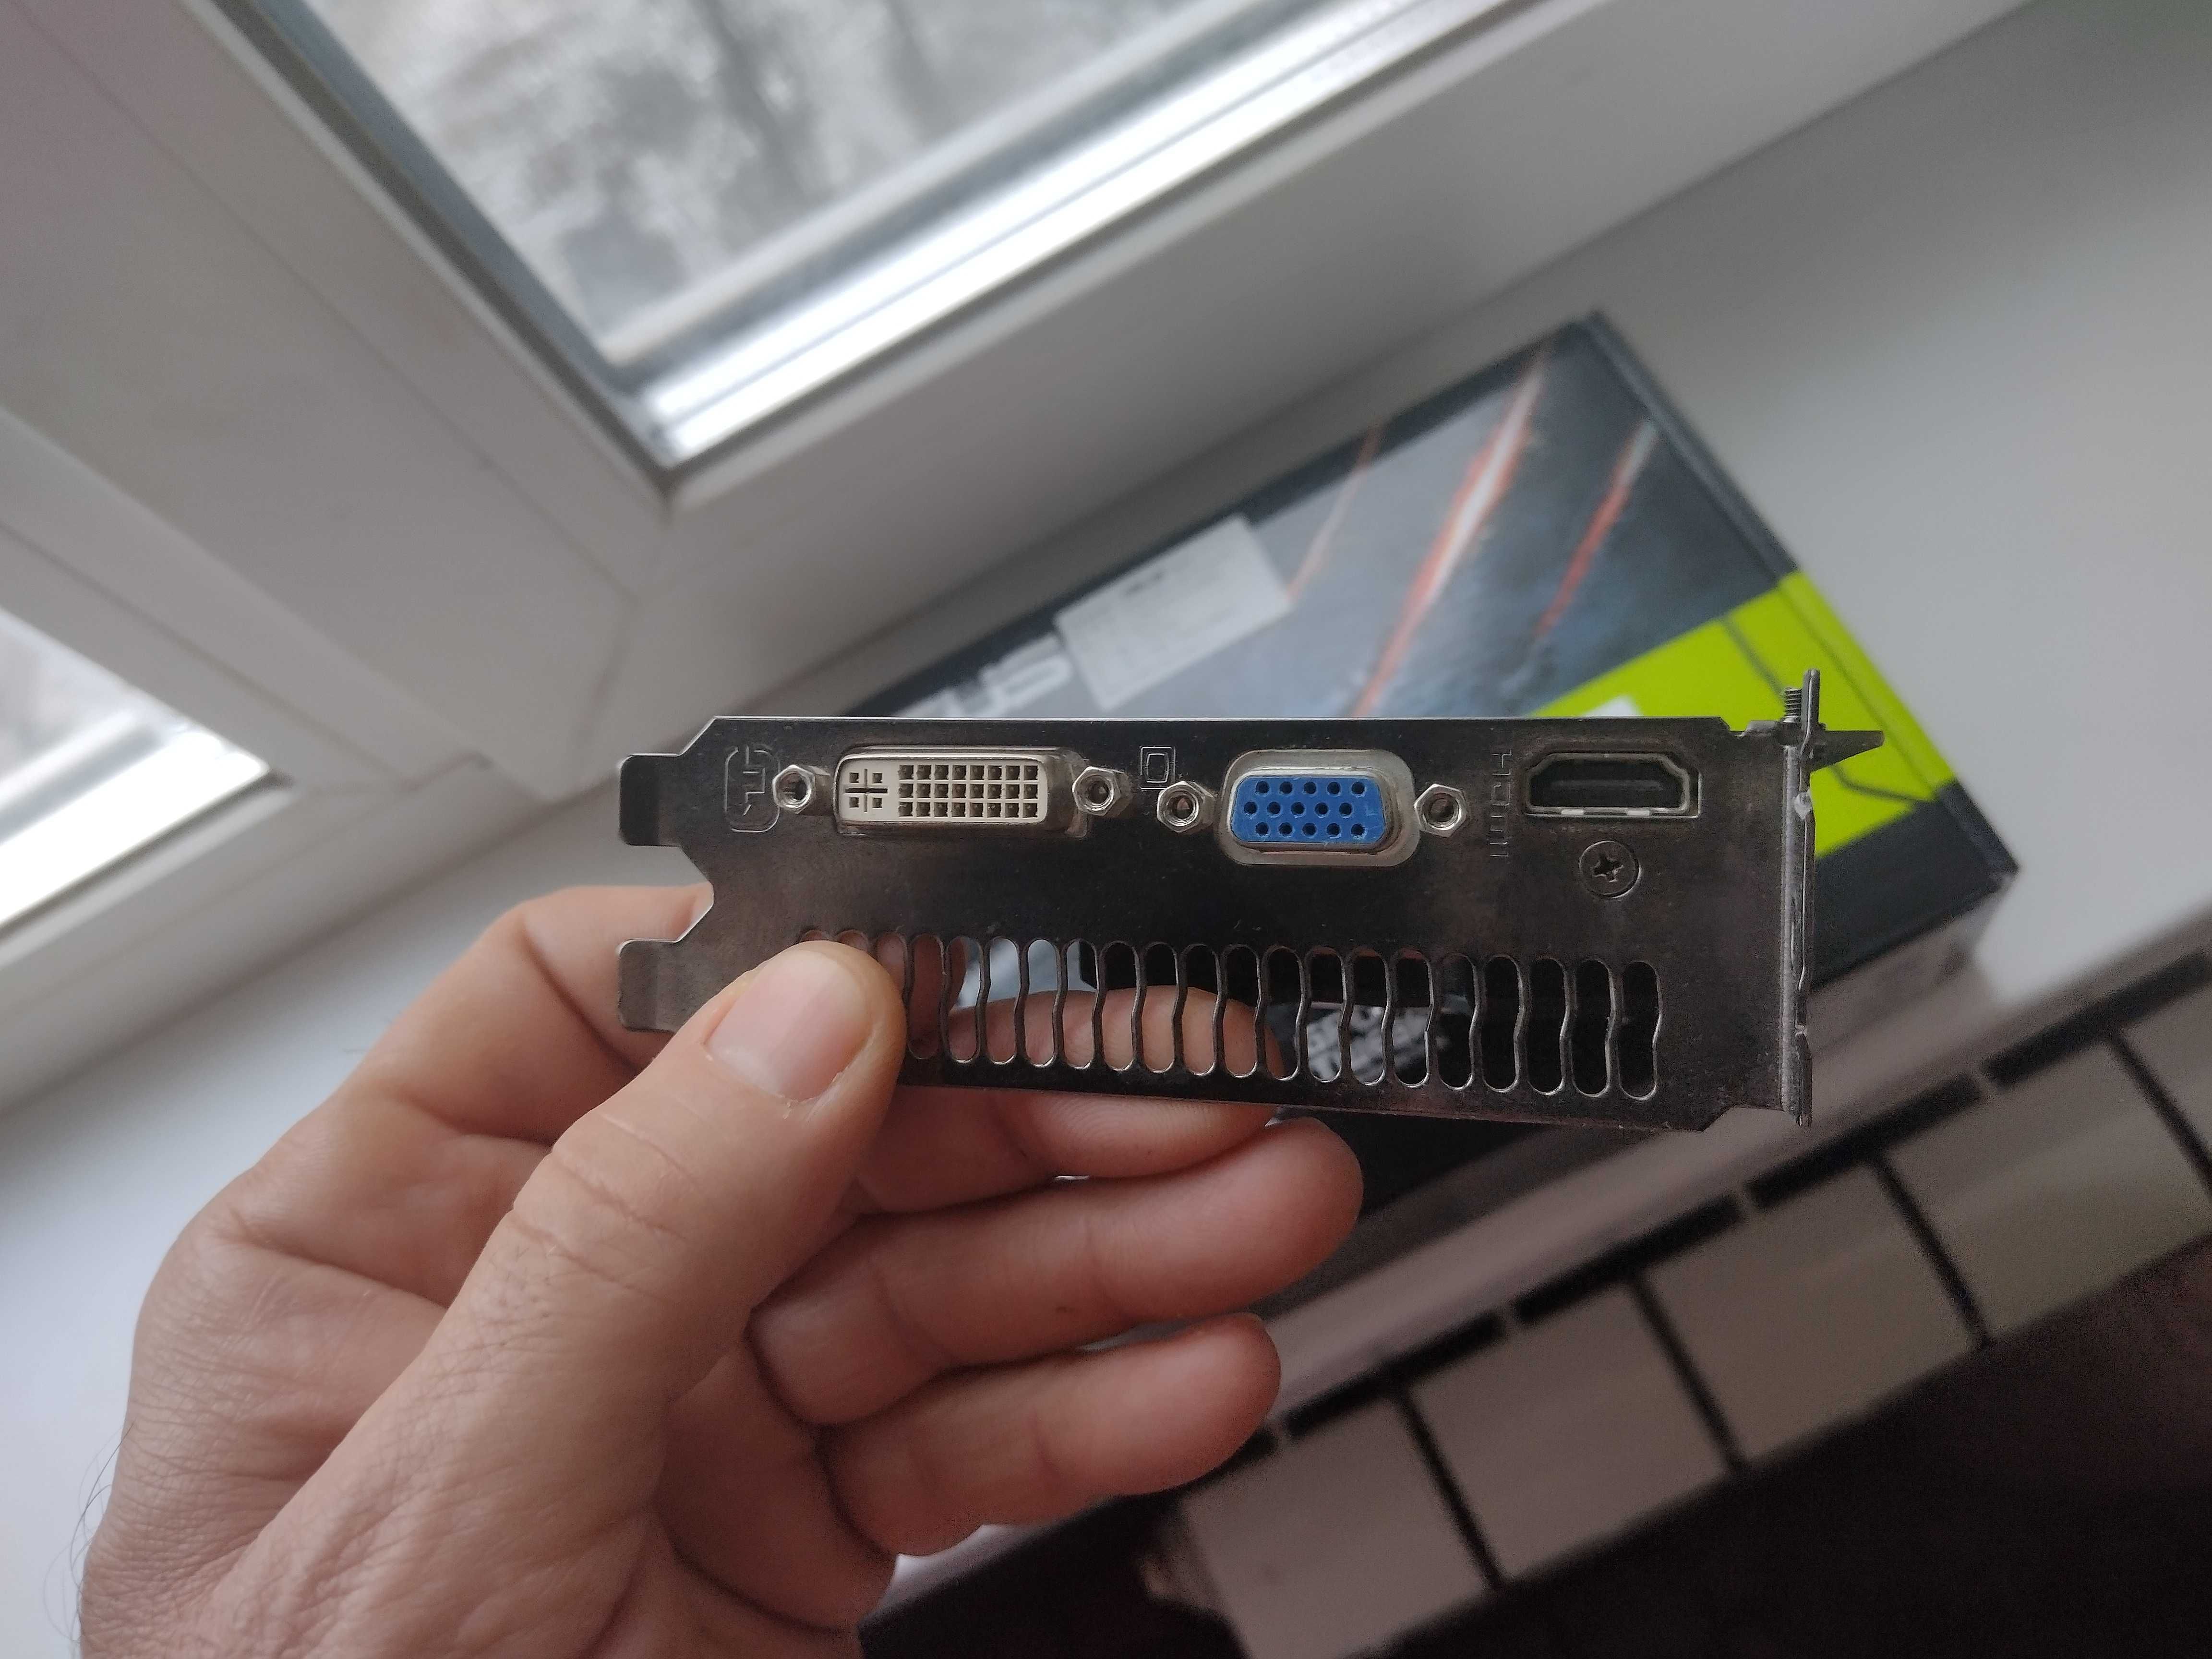 Asus PCI-Ex GeForce GT 440 1024MB GDDR5 (128bit) (DVI, VGA, HDMI)